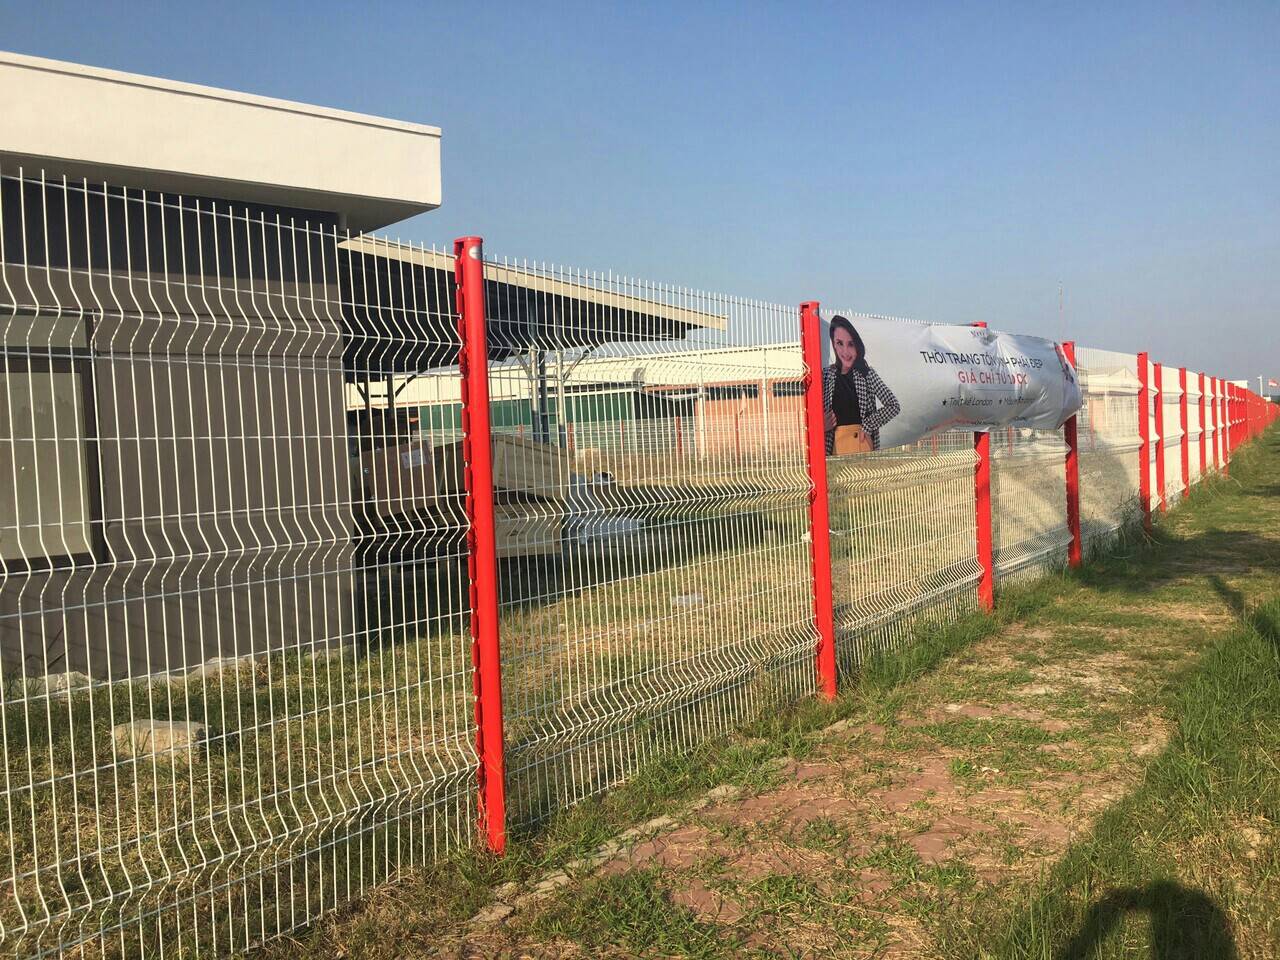 Làm hàng rào KCN Tây Bắc Củ Chi  chuyên sản xuất và cung cấp lưới thép hàng rào mạ kẽm, hàng rào sơn tĩnh điện, hàng rào bọc nhựa. 0903.775.567 Mr Hùng